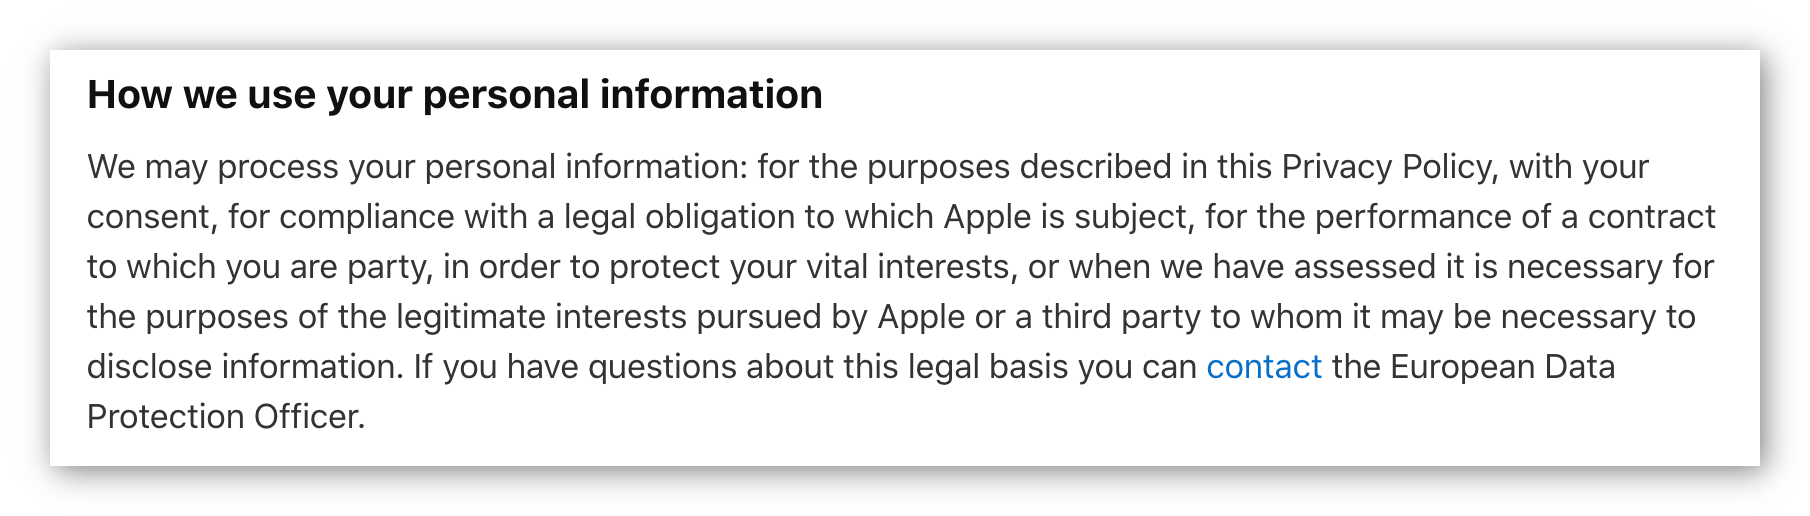 Снимок экрана с политикой конфиденциальности Apple